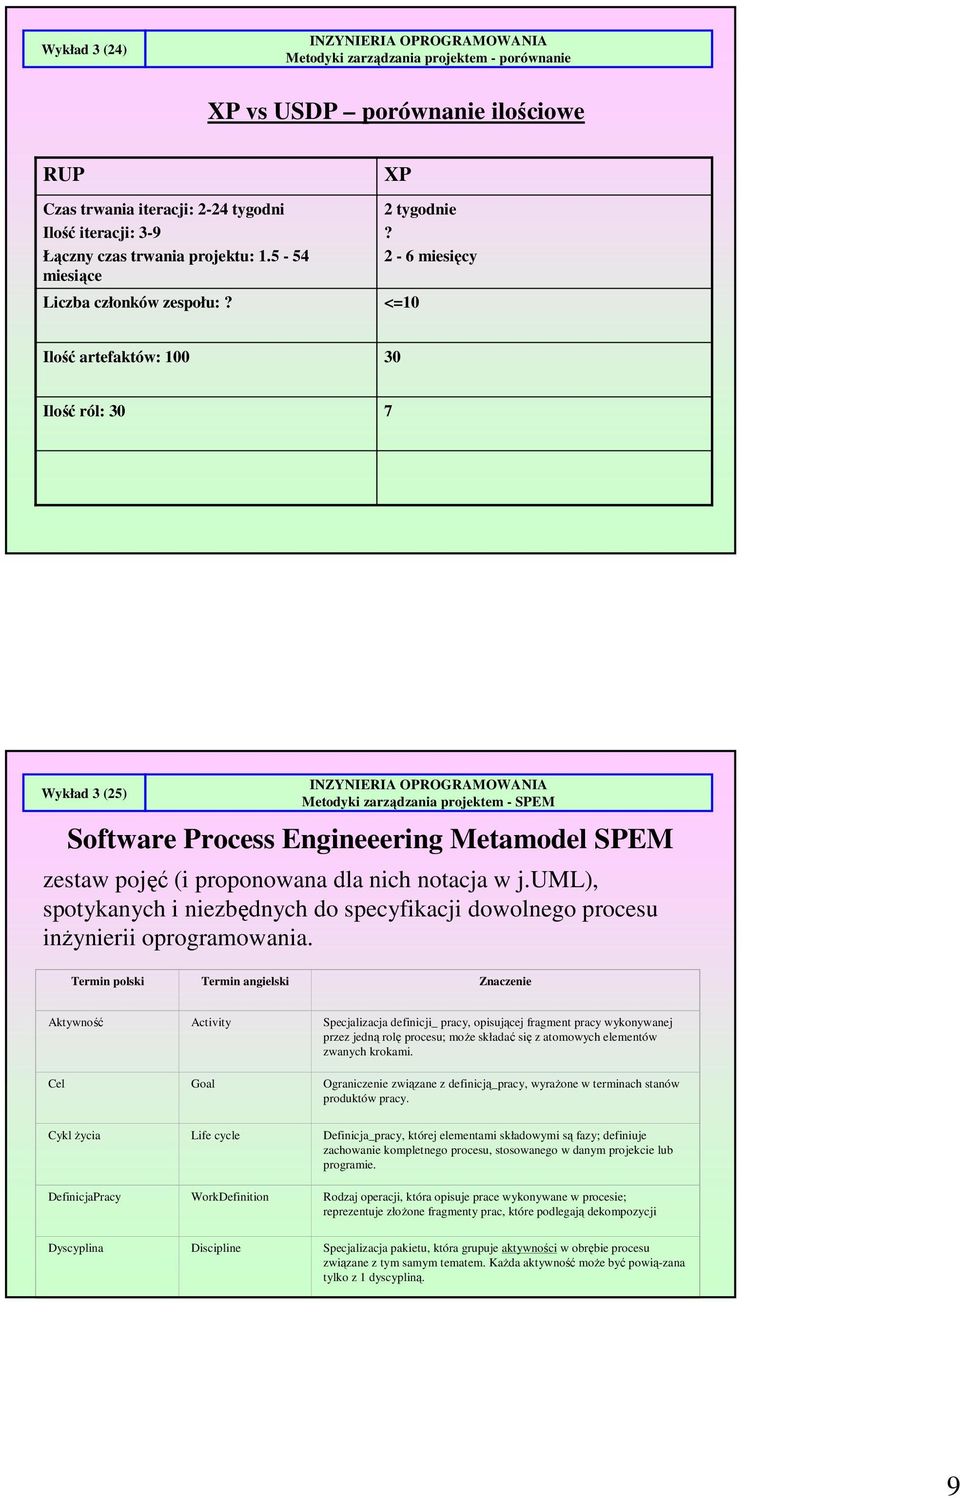 notacja w j.uml), spotykanych i niezbędnych do specyfikacji dowolnego procesu inżynierii oprogramowania.